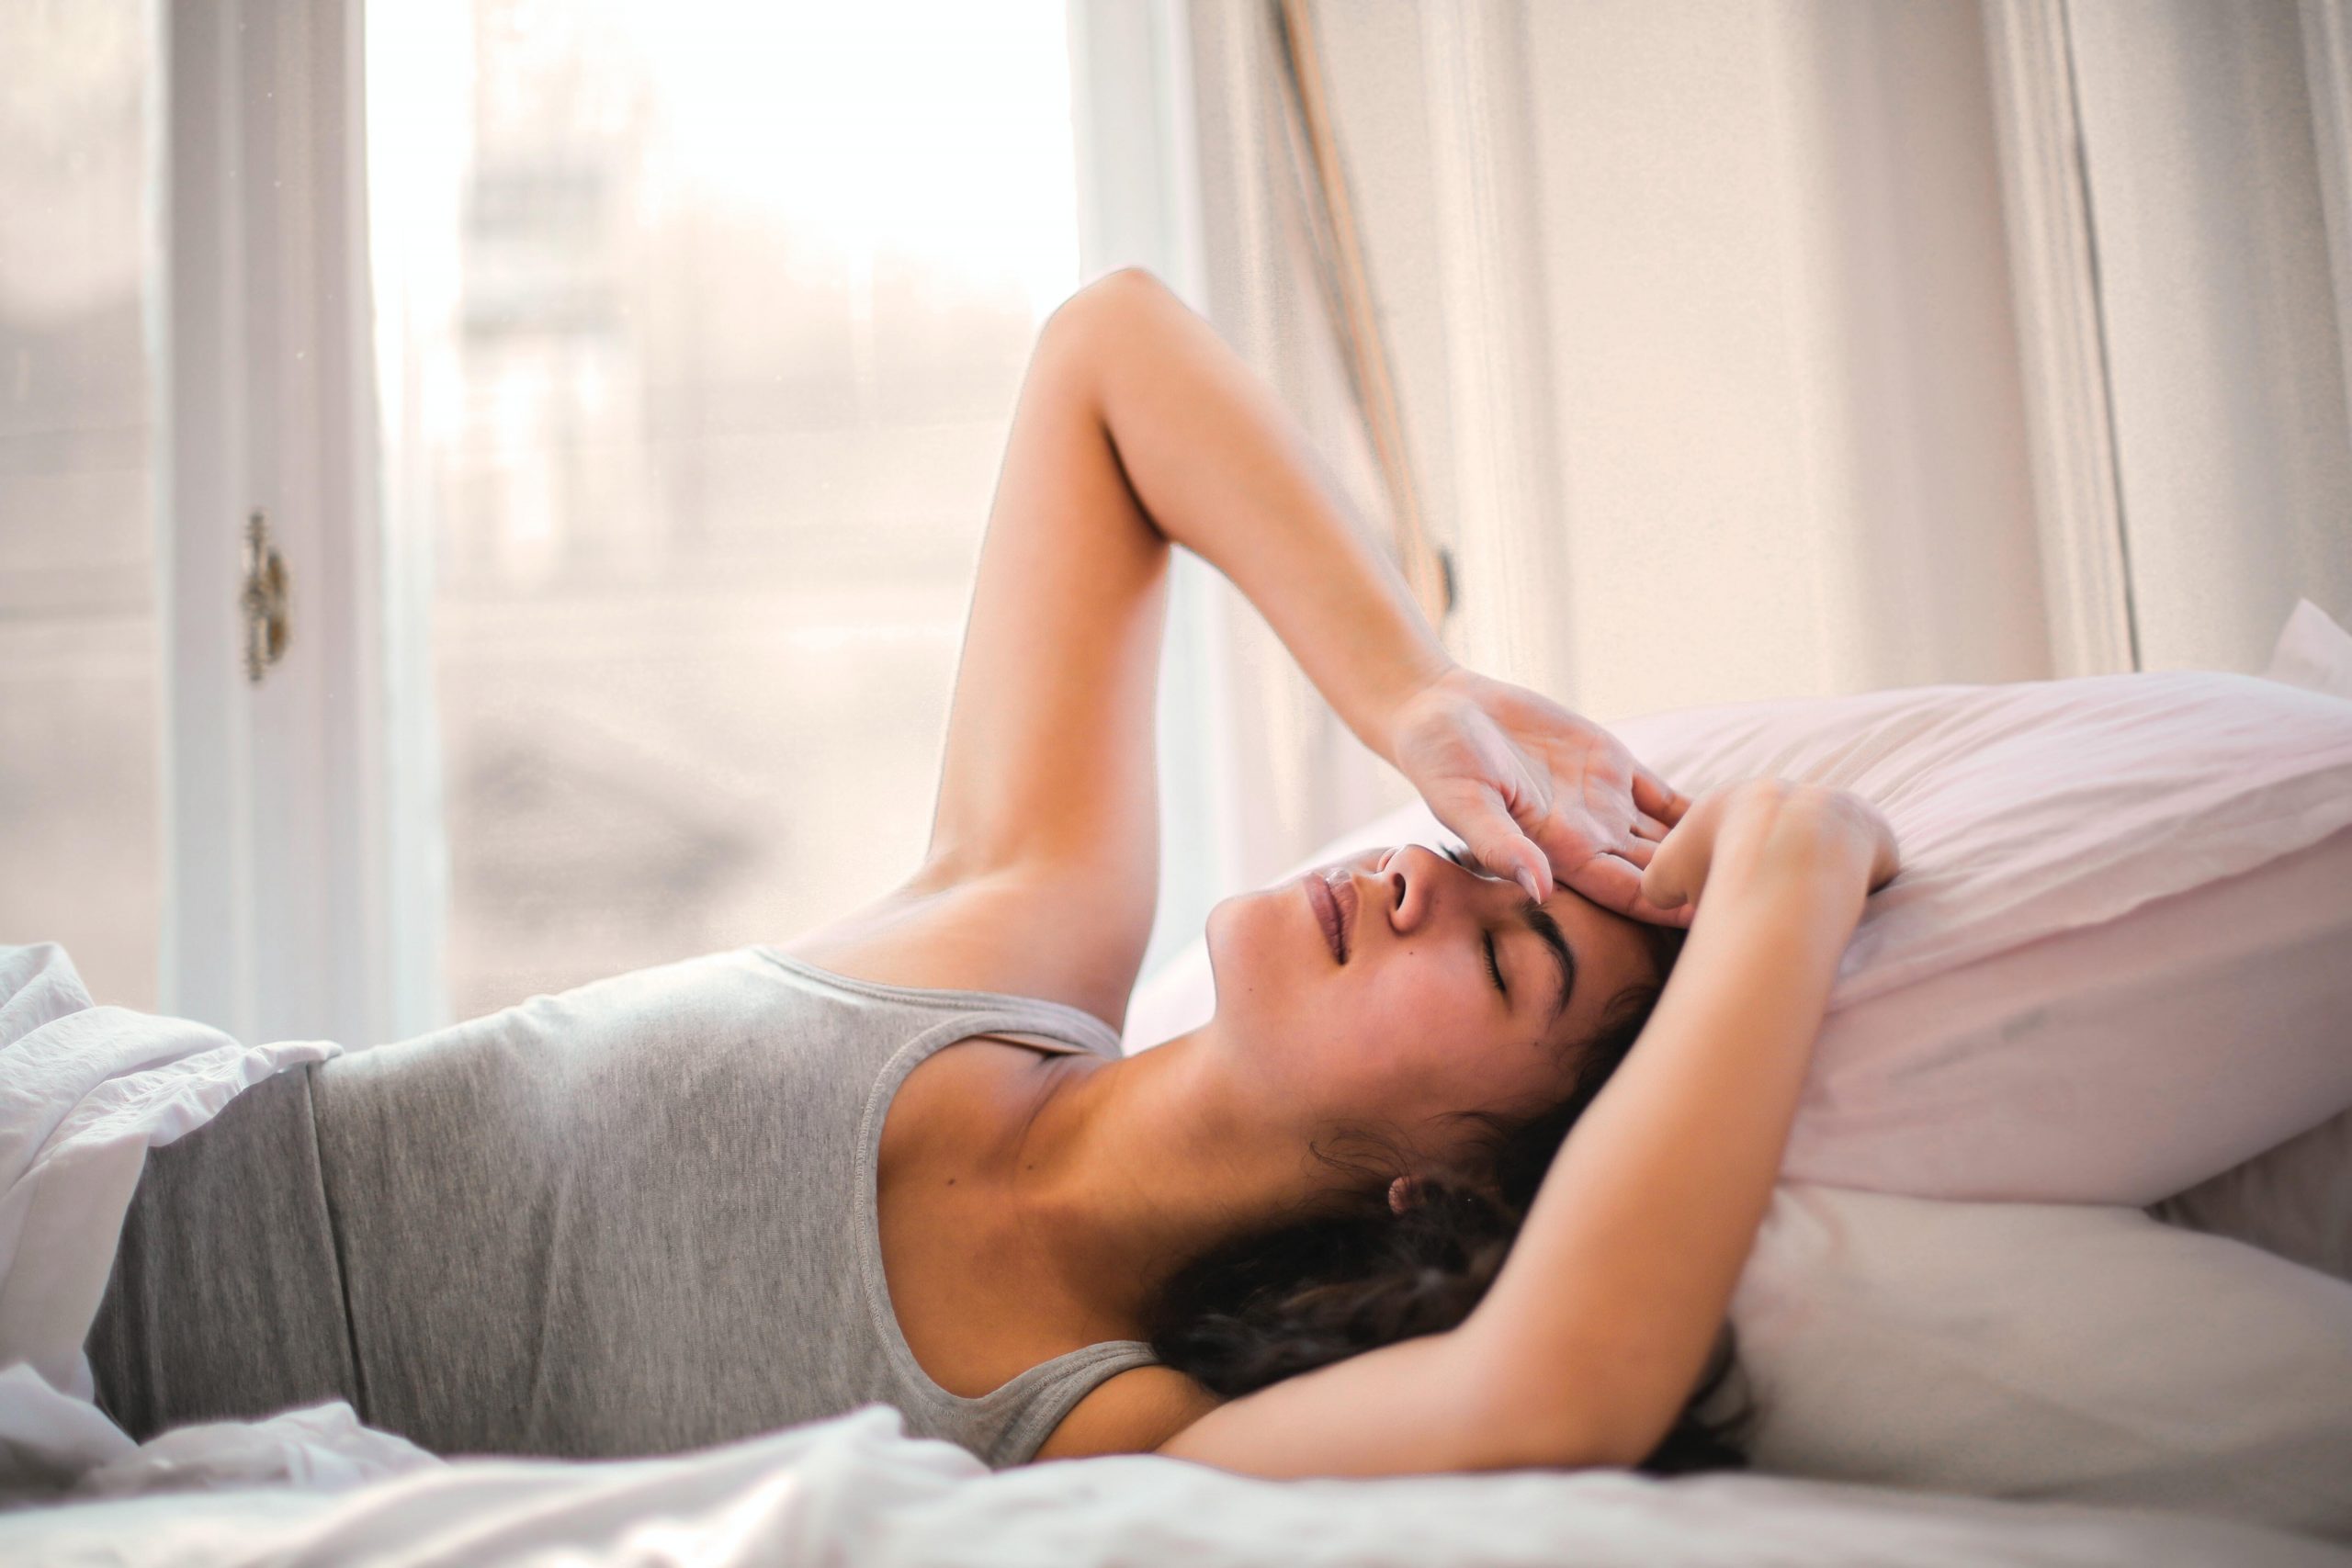 Dormir mal cuando menstrúas puede afectar tu vida social